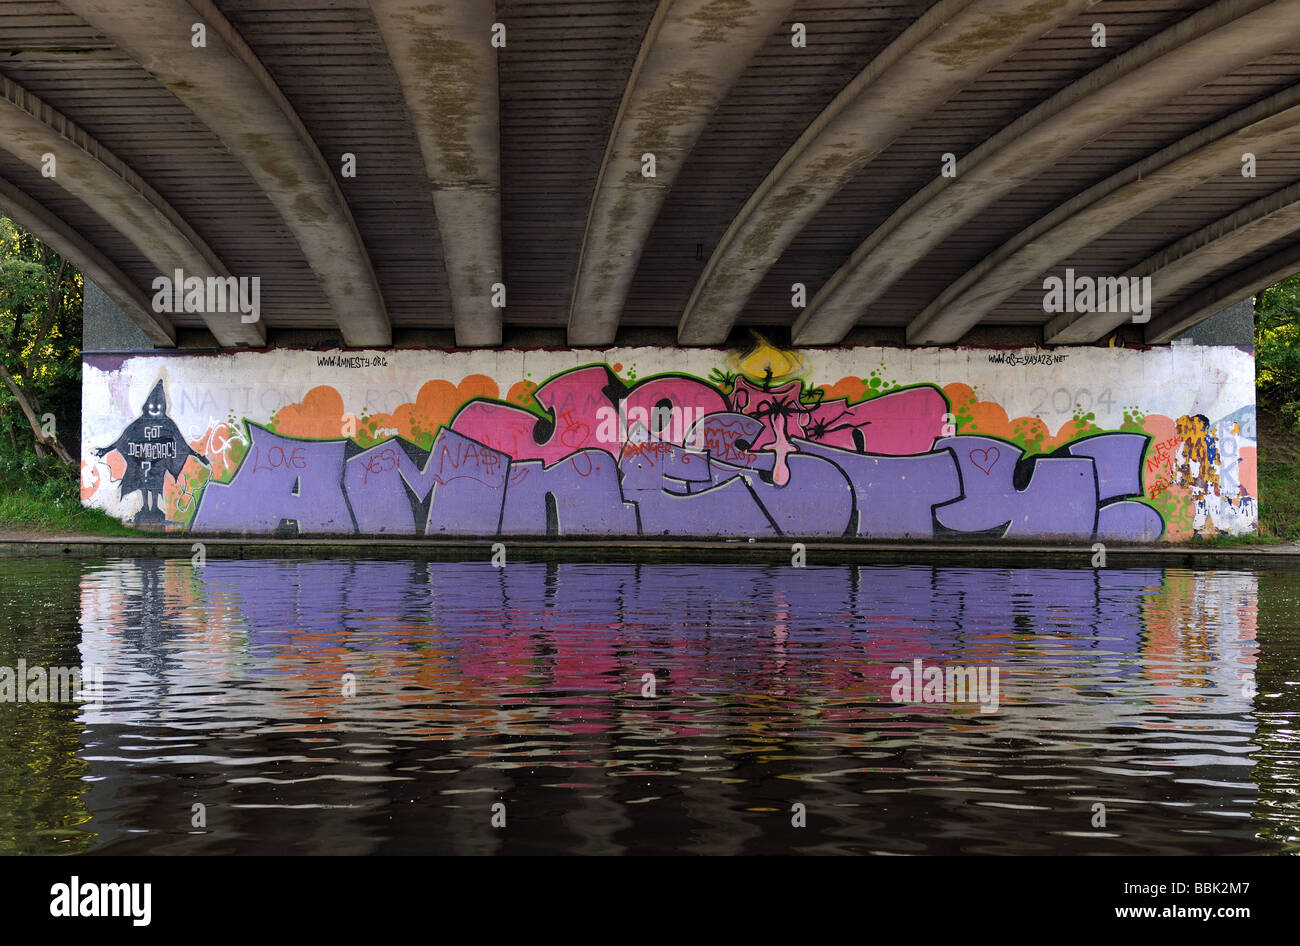 Inscrivez-vous 'graffiti' amnistie sous pont de Donnington, Oxford, UK Banque D'Images